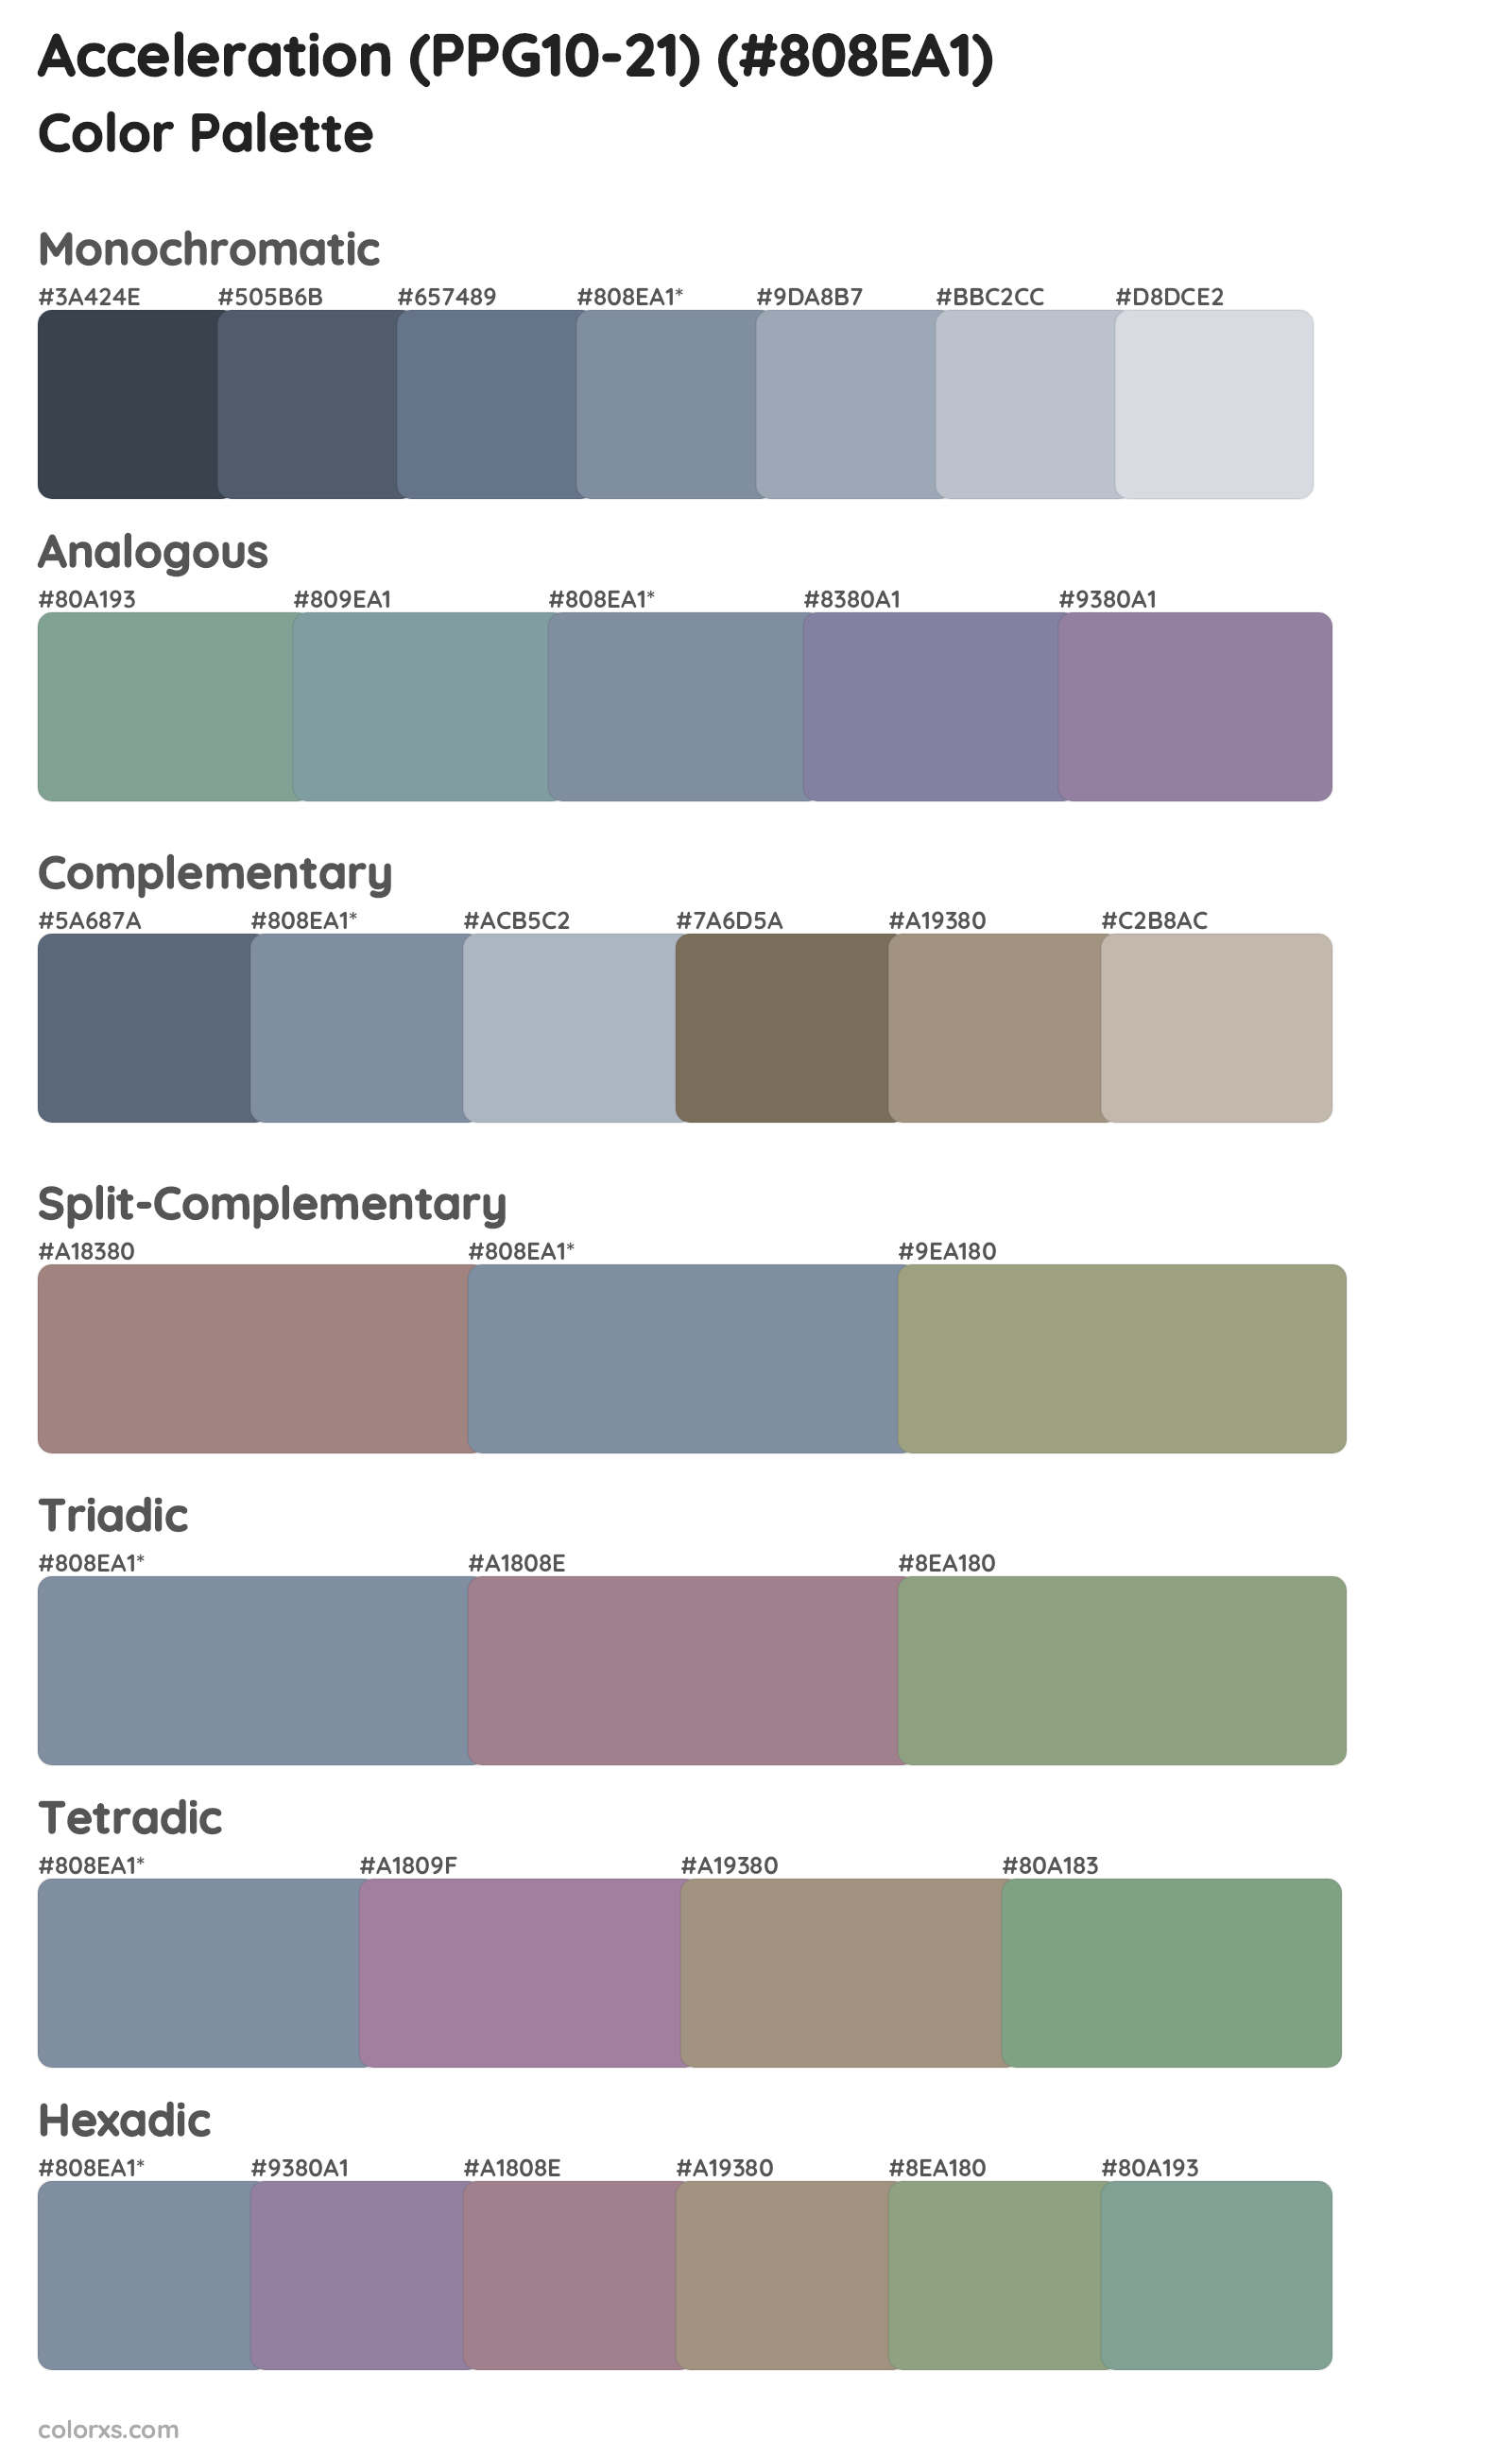 Acceleration (PPG10-21) Color Scheme Palettes